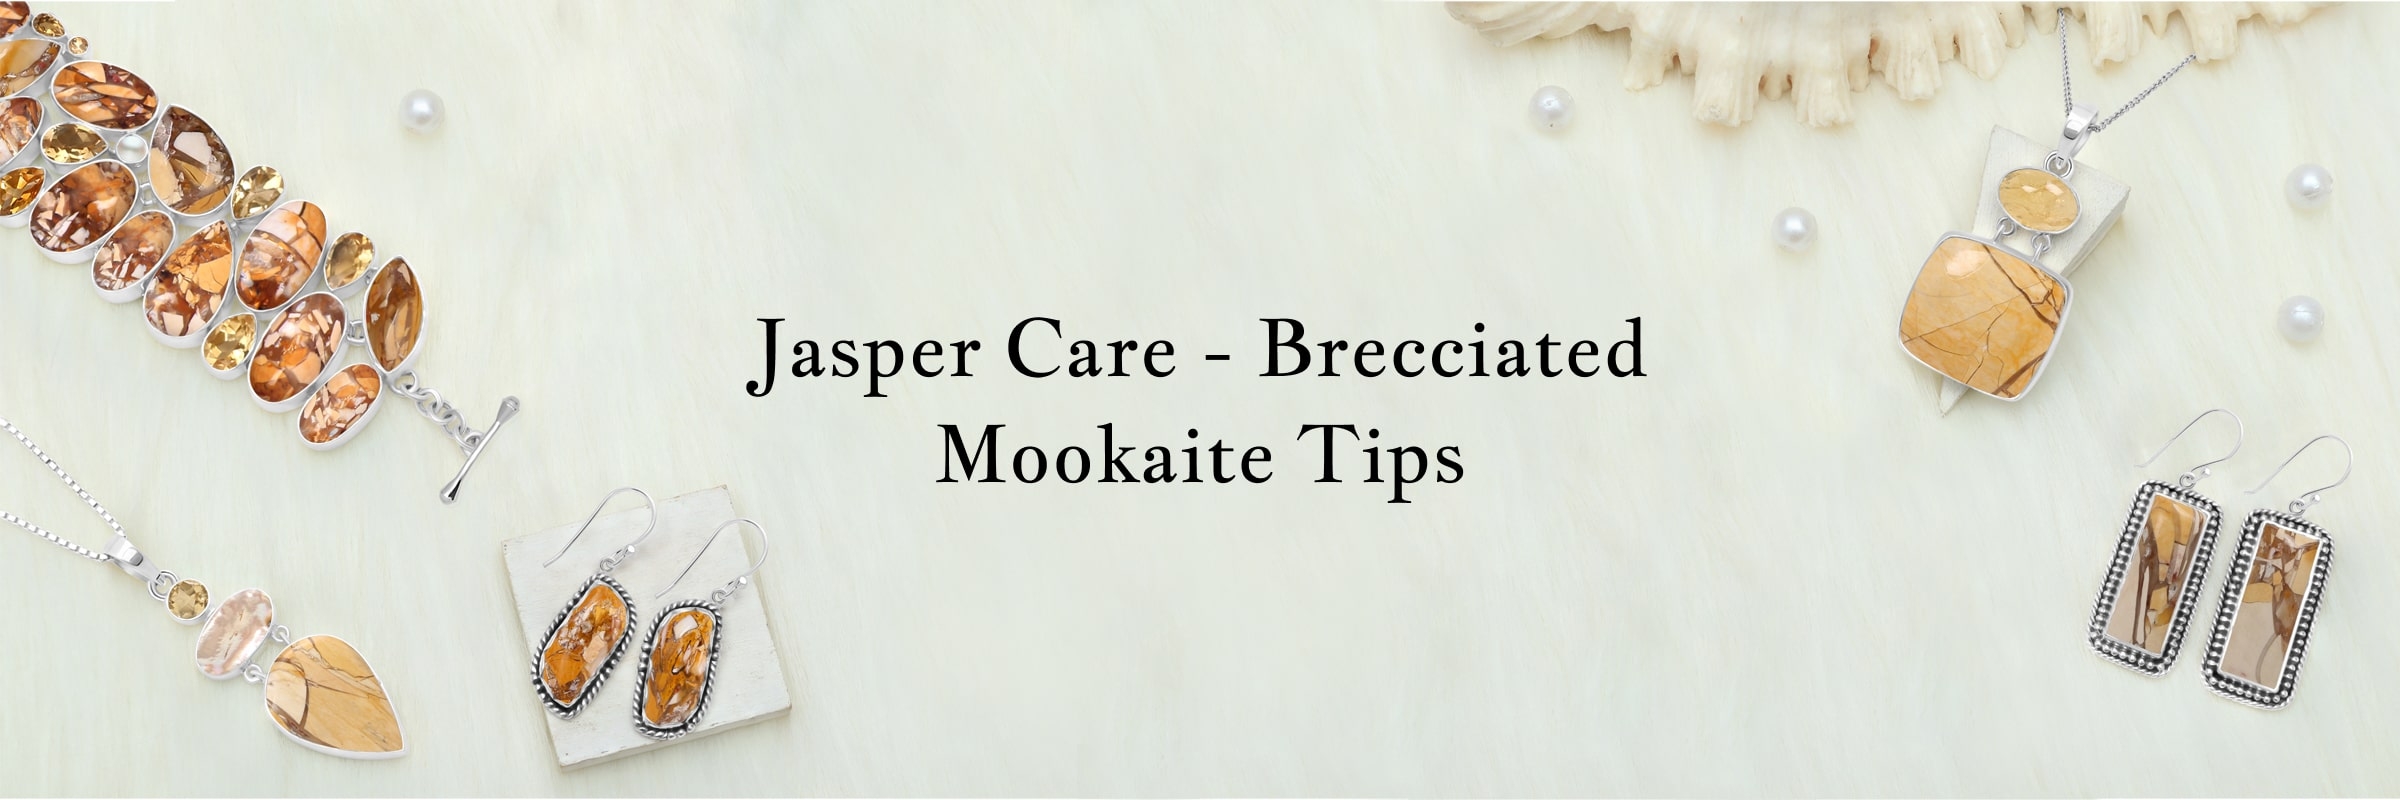 Proper Care Of Brecciated Mookaite Jasper